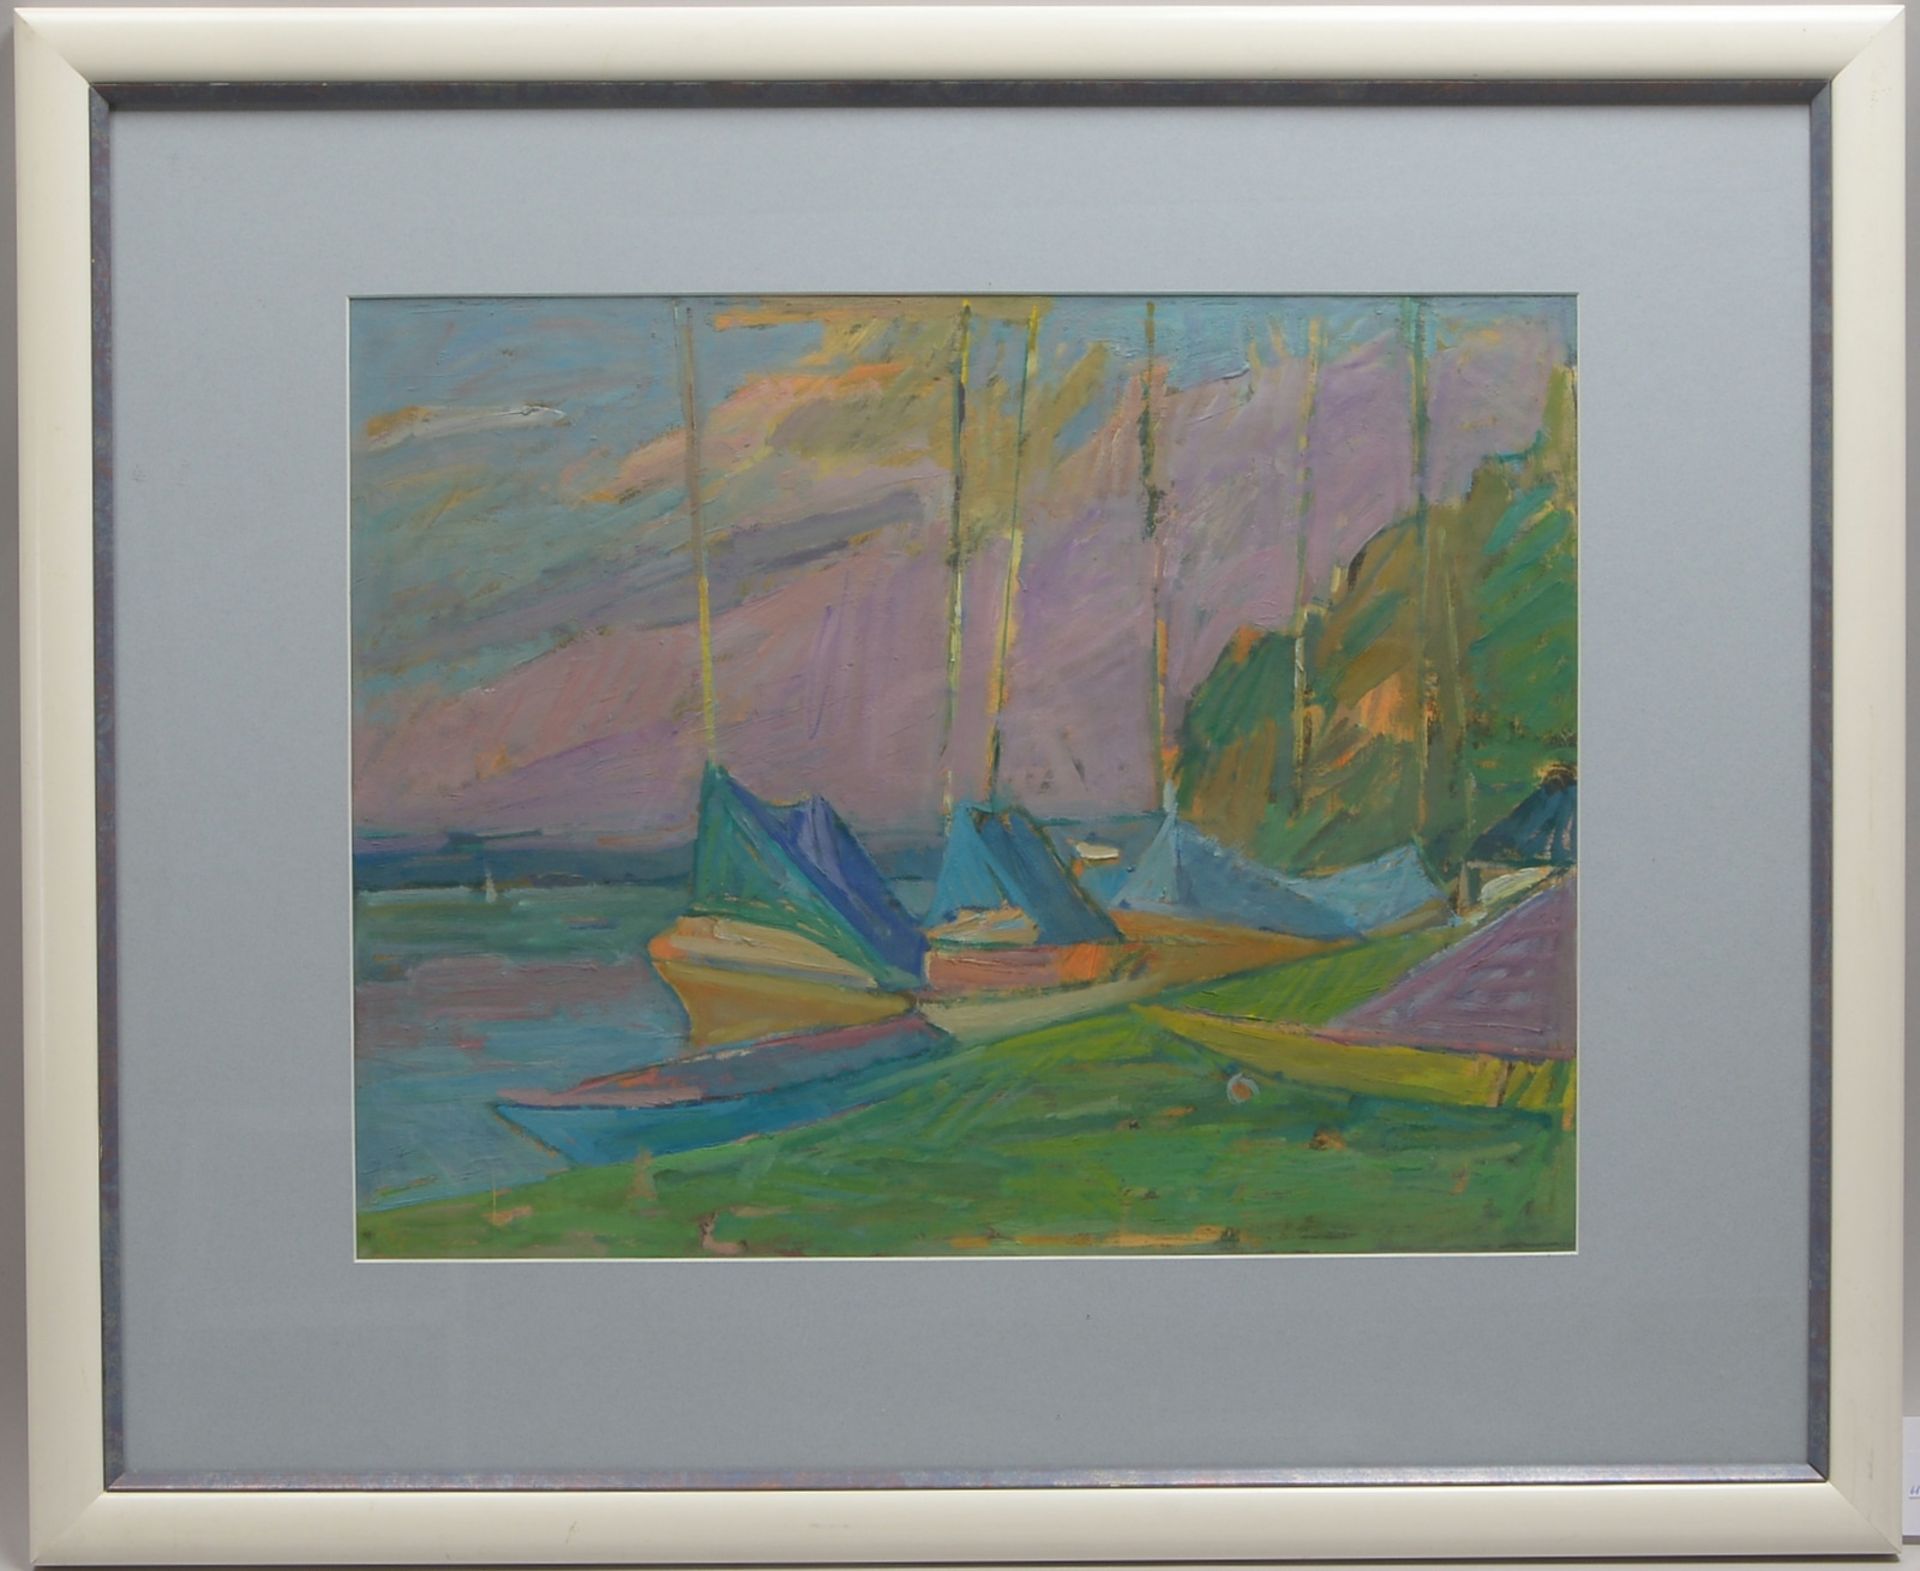 Gemälde, 'Segelboote am Starnberger See', Gouache auf Papier, unter PP hinter Glas